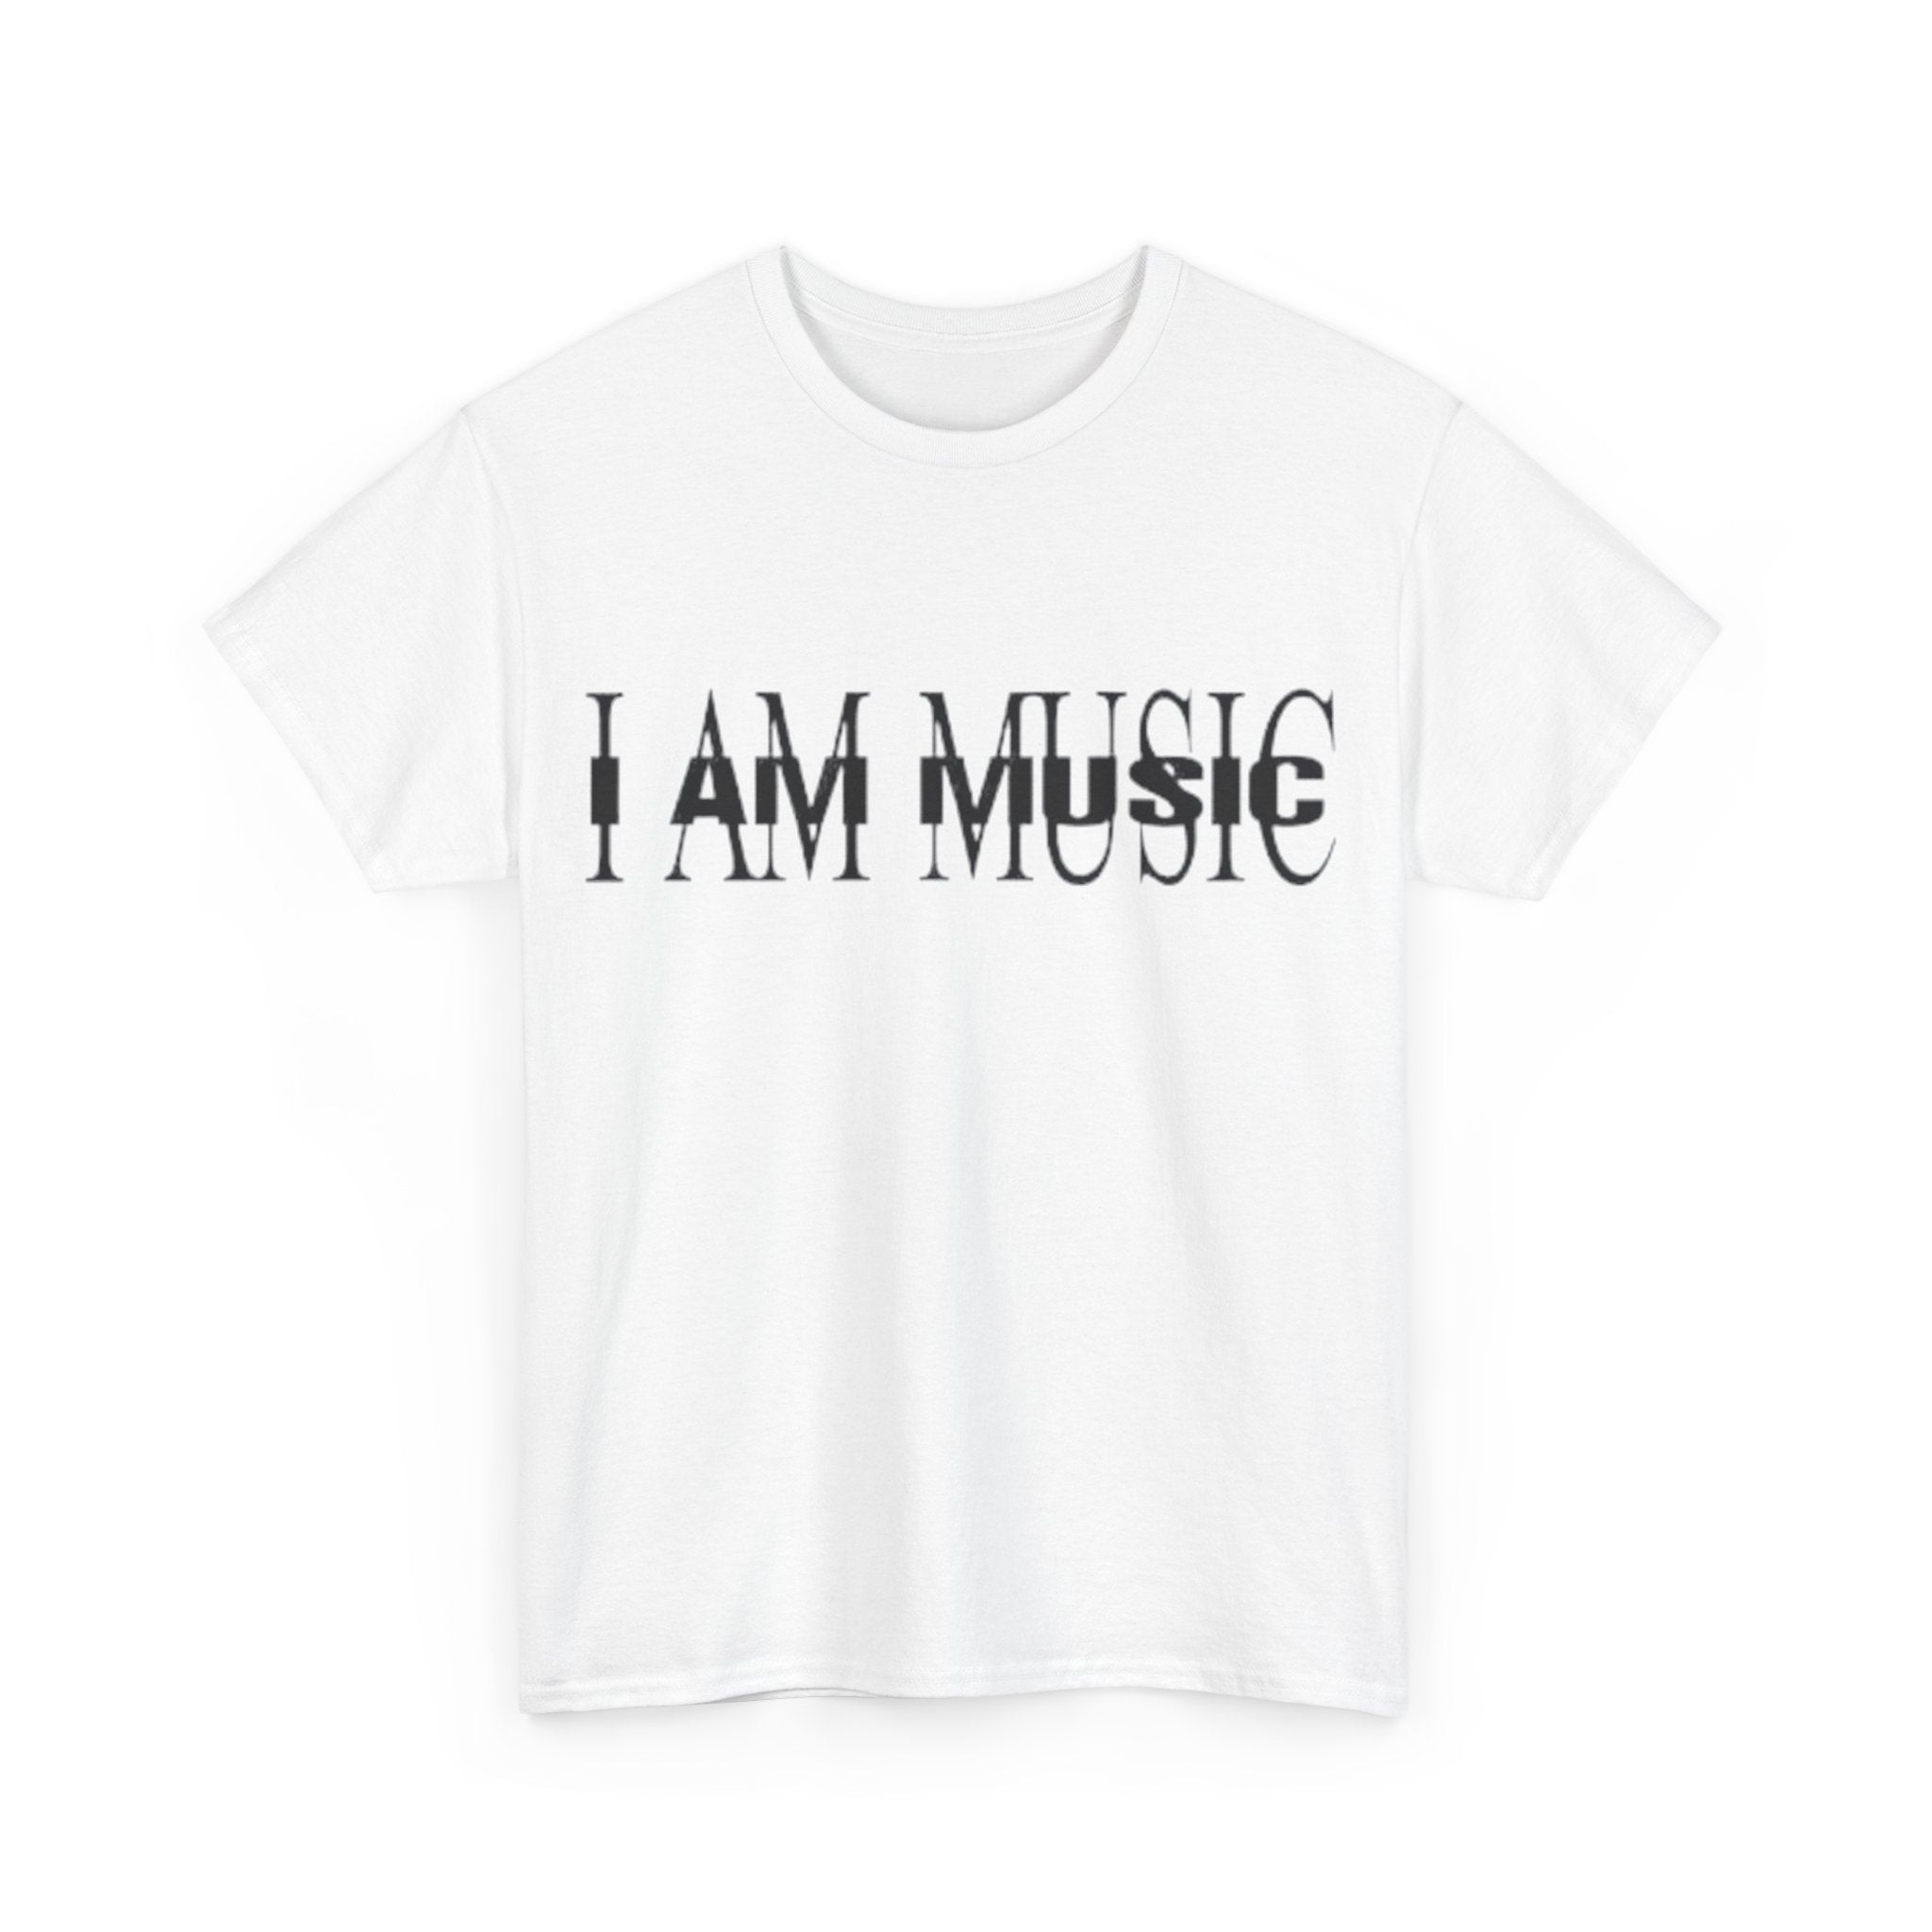 I AM MUSIC T-Shirt